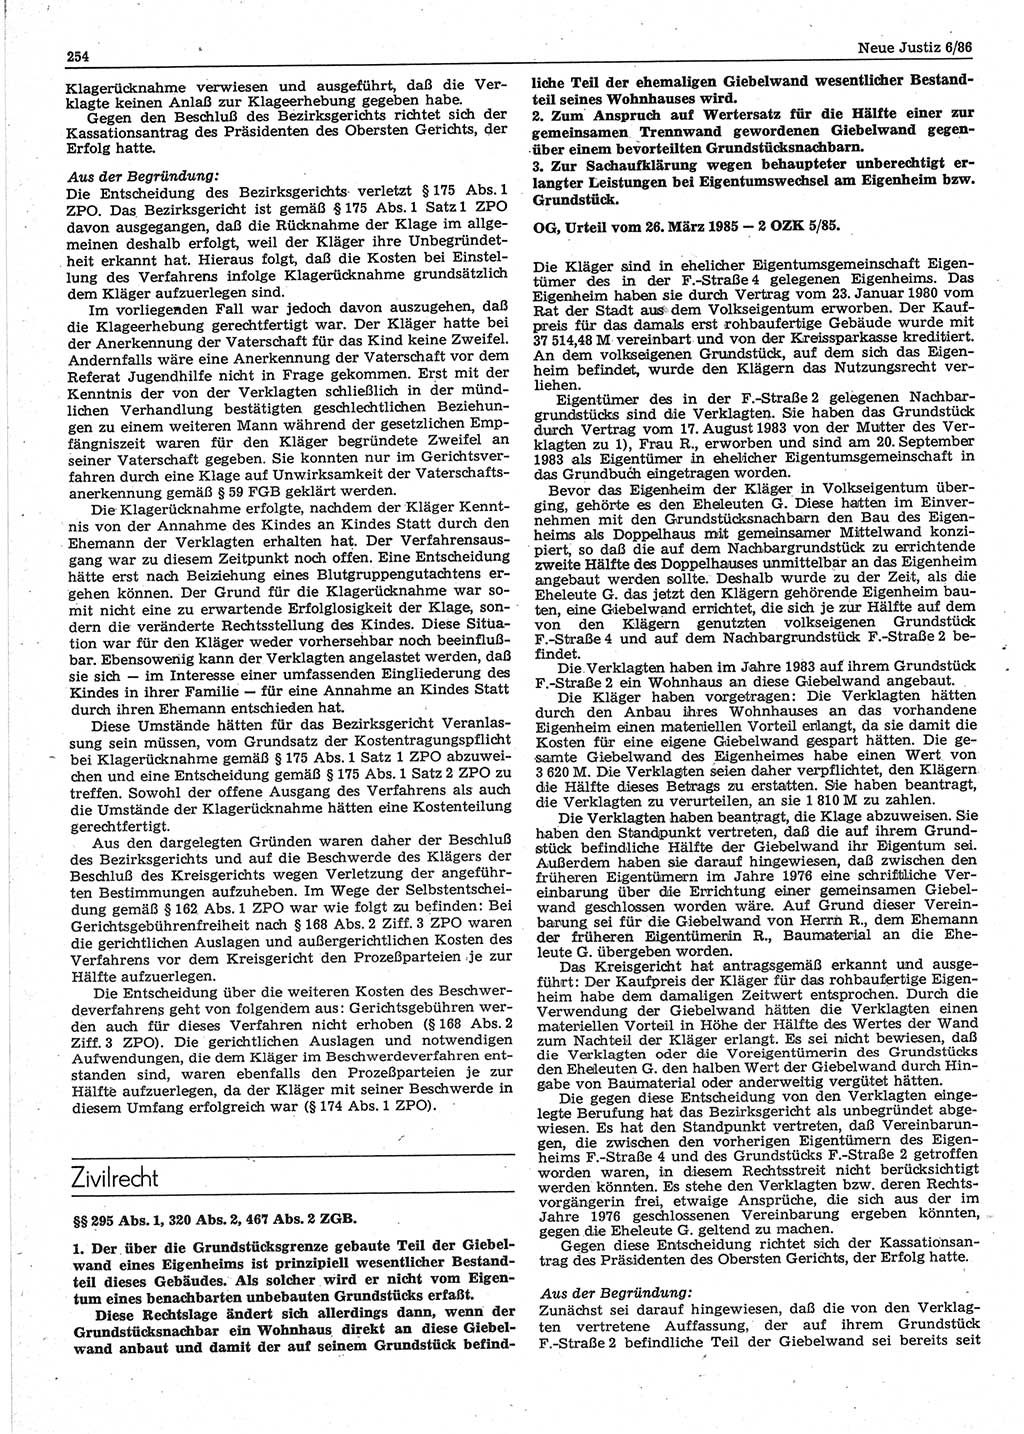 Neue Justiz (NJ), Zeitschrift für sozialistisches Recht und Gesetzlichkeit [Deutsche Demokratische Republik (DDR)], 40. Jahrgang 1986, Seite 254 (NJ DDR 1986, S. 254)